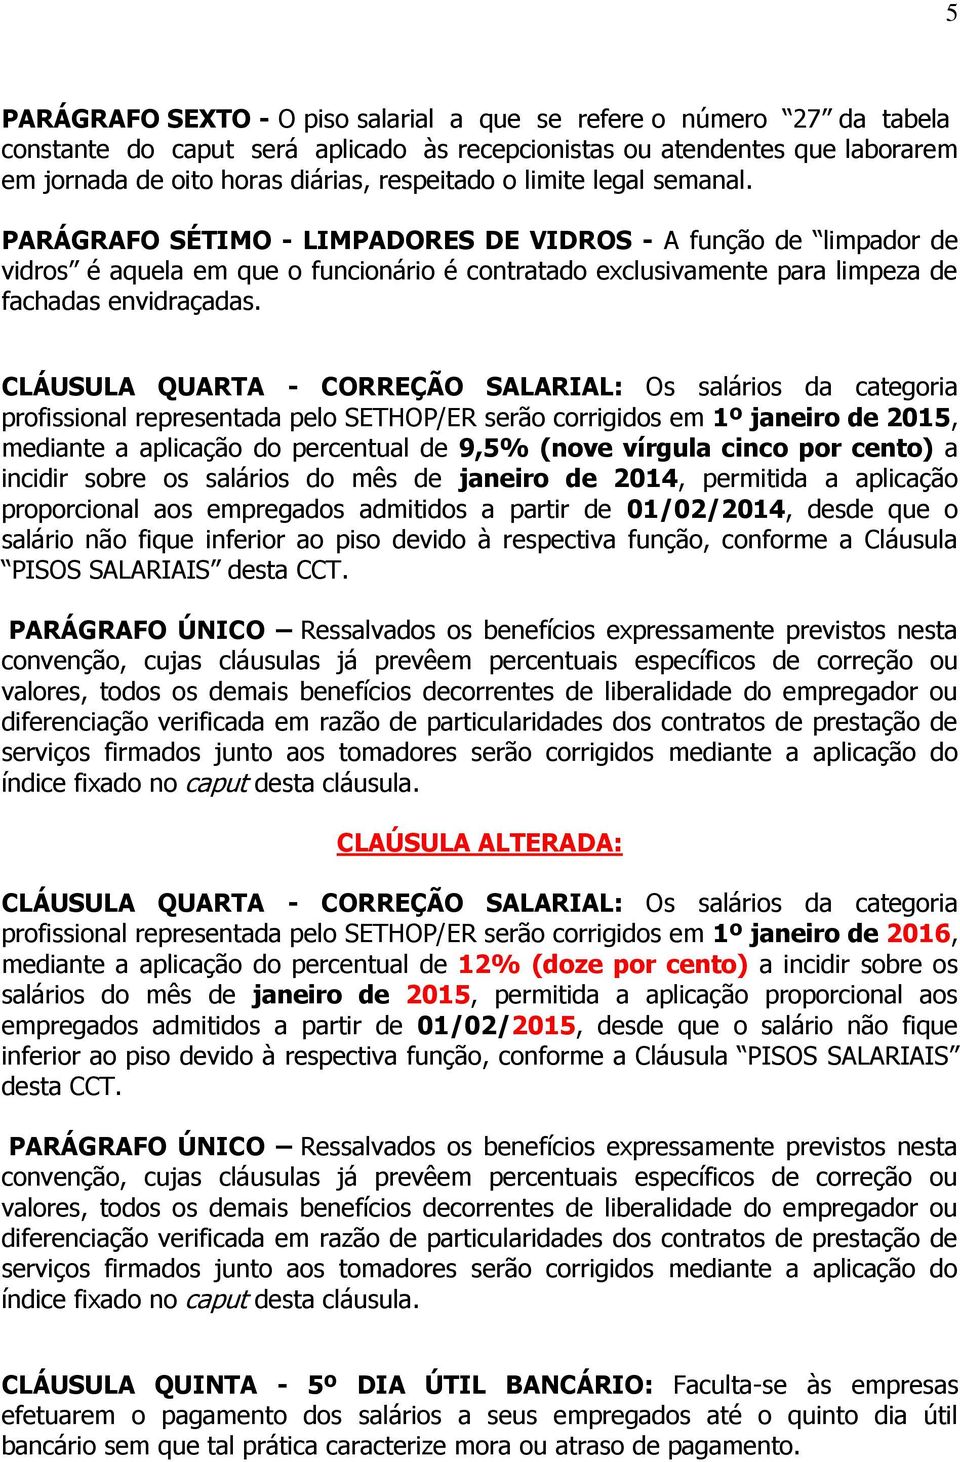 CLÁUSULA QUARTA - CORREÇÃO SALARIAL: Os salários da categoria profissional representada pelo SETHOP/ER serão corrigidos em 1º janeiro de 2015, mediante a aplicação do percentual de 9,5% (nove vírgula